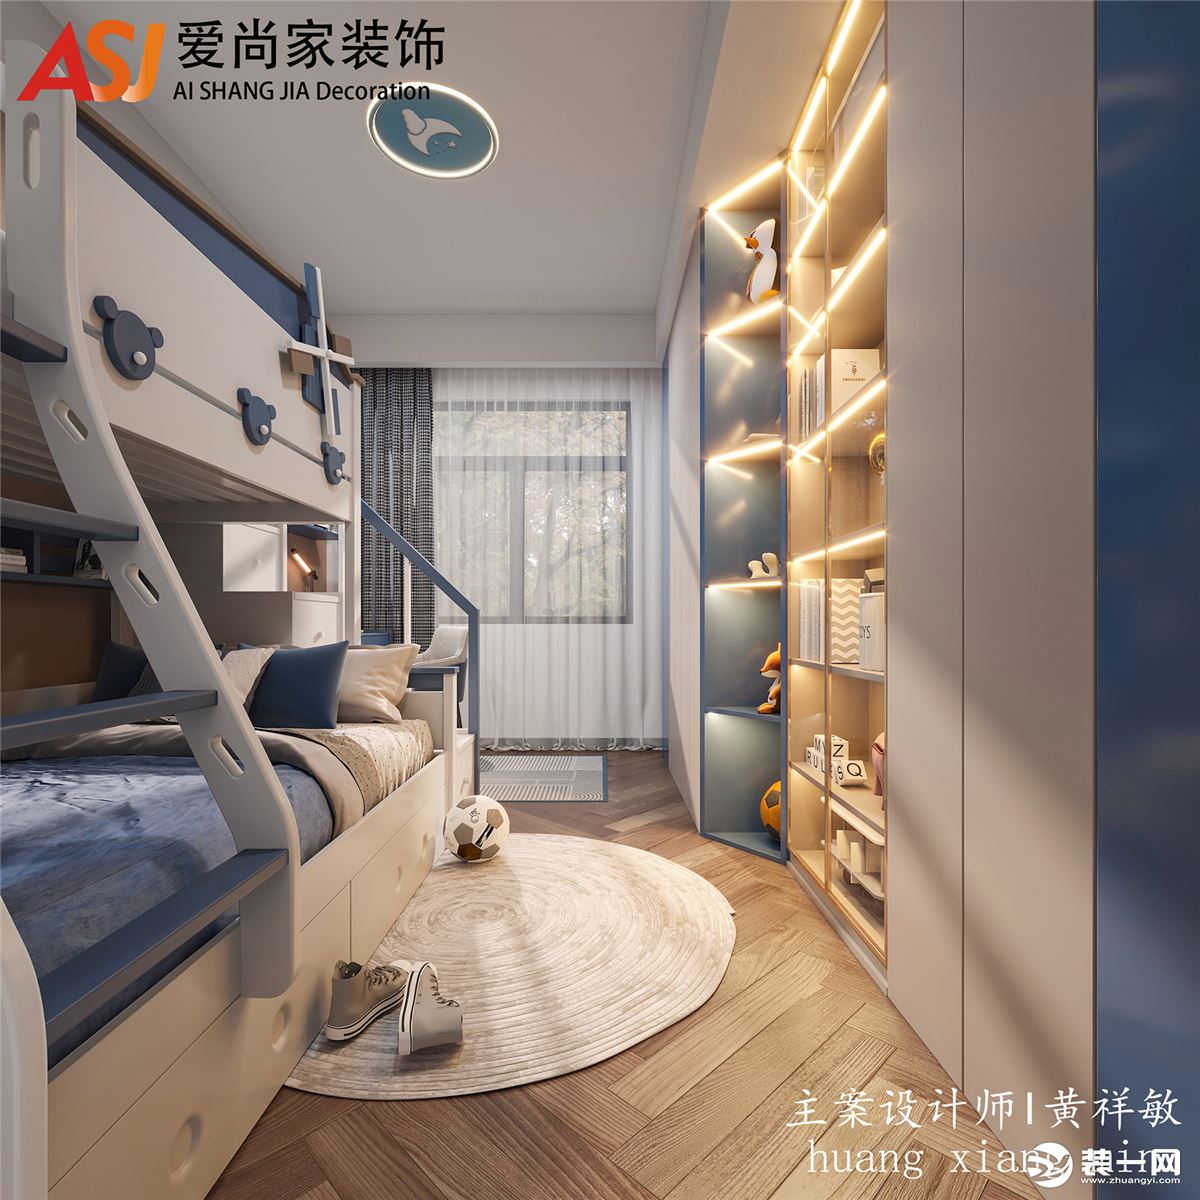 这绝对是一个比较节省空间的设计，  在小小的卧室放高低床，  纵向利用不了，  完美了利用了横向，